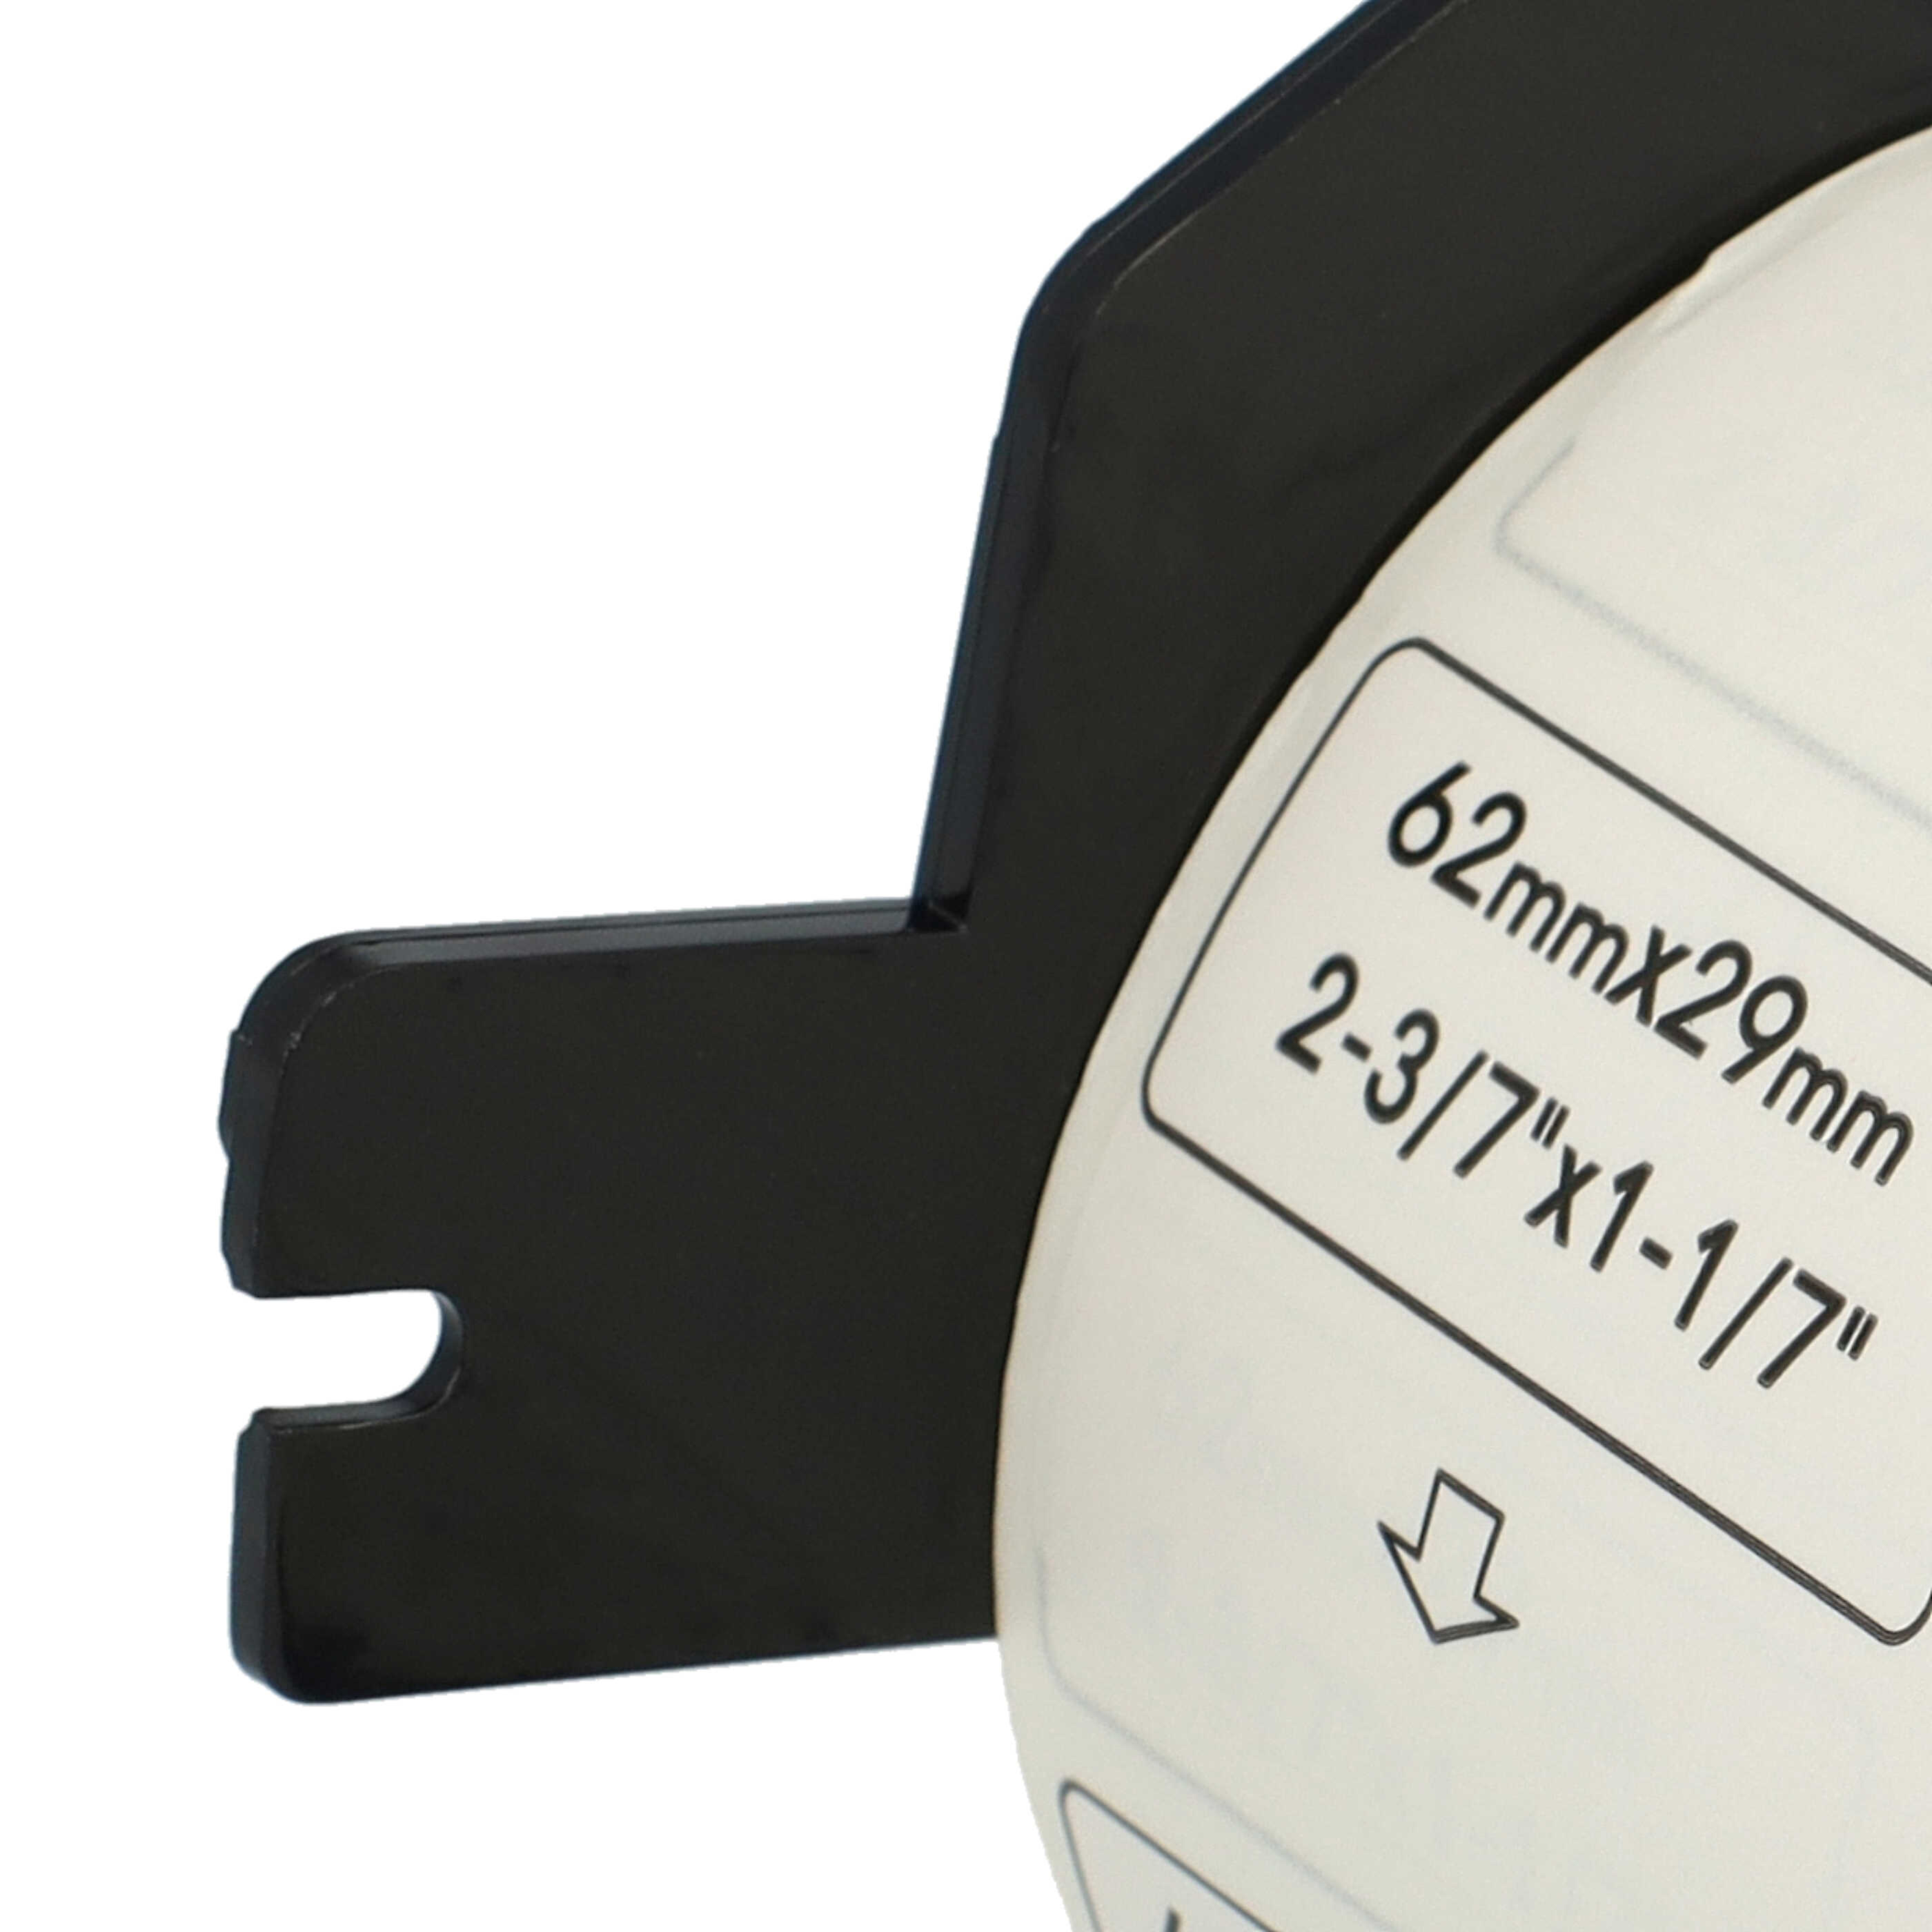 Rotolo etichette sostituisce Brother DK-11209 per etichettatrice - 62mm x 29mm + supporto